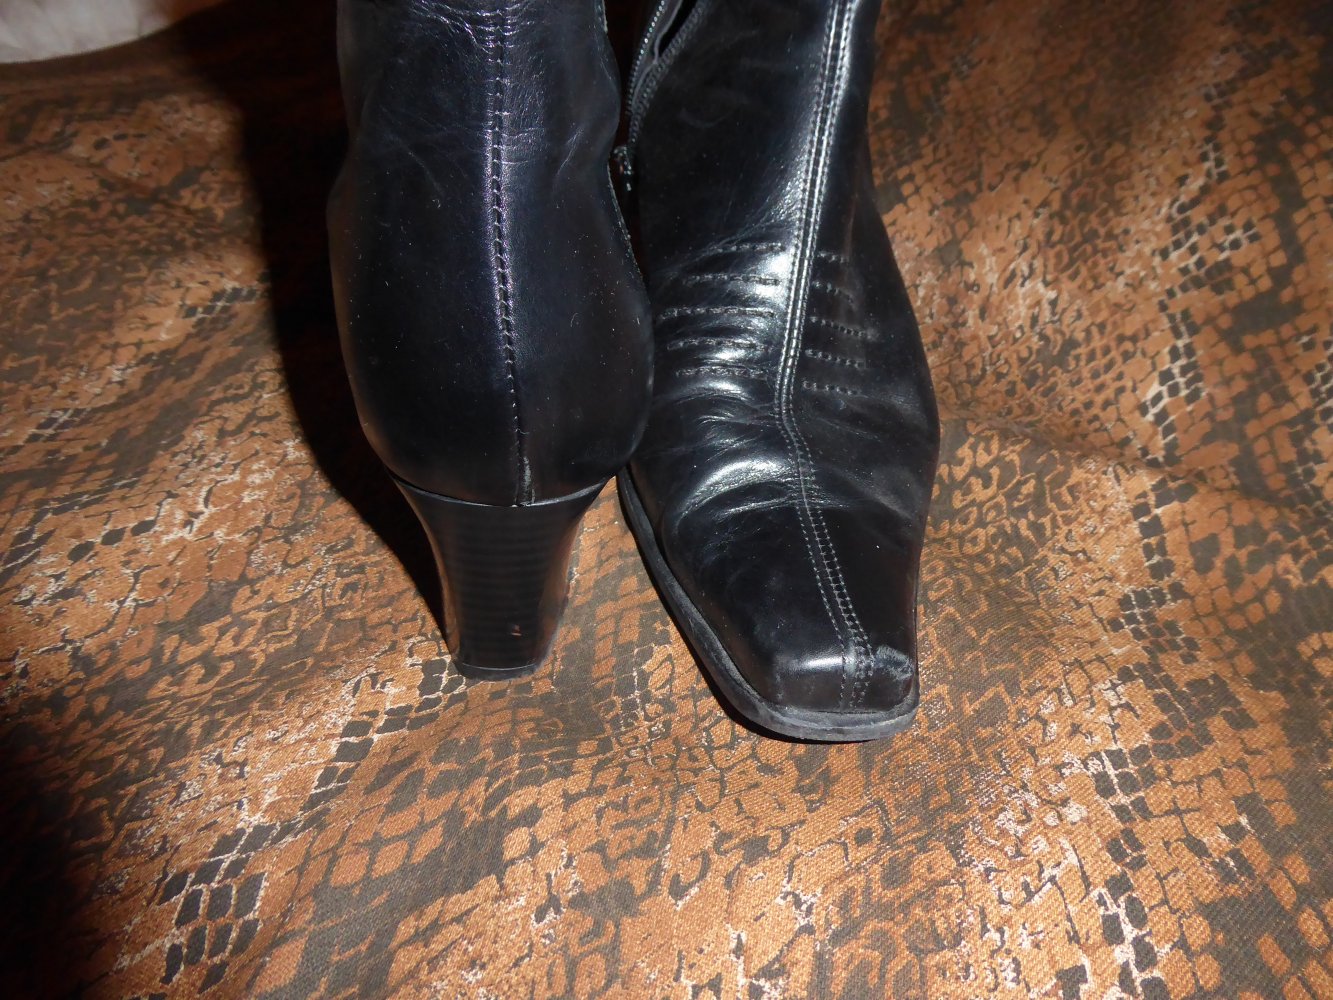 Zanon & Zago - Damen Stiefelette Boots Gr. 41 echtes LEDER schwarz Absatz 6  cm Schuhe Lederstiefel :: Kleiderkorb.ch